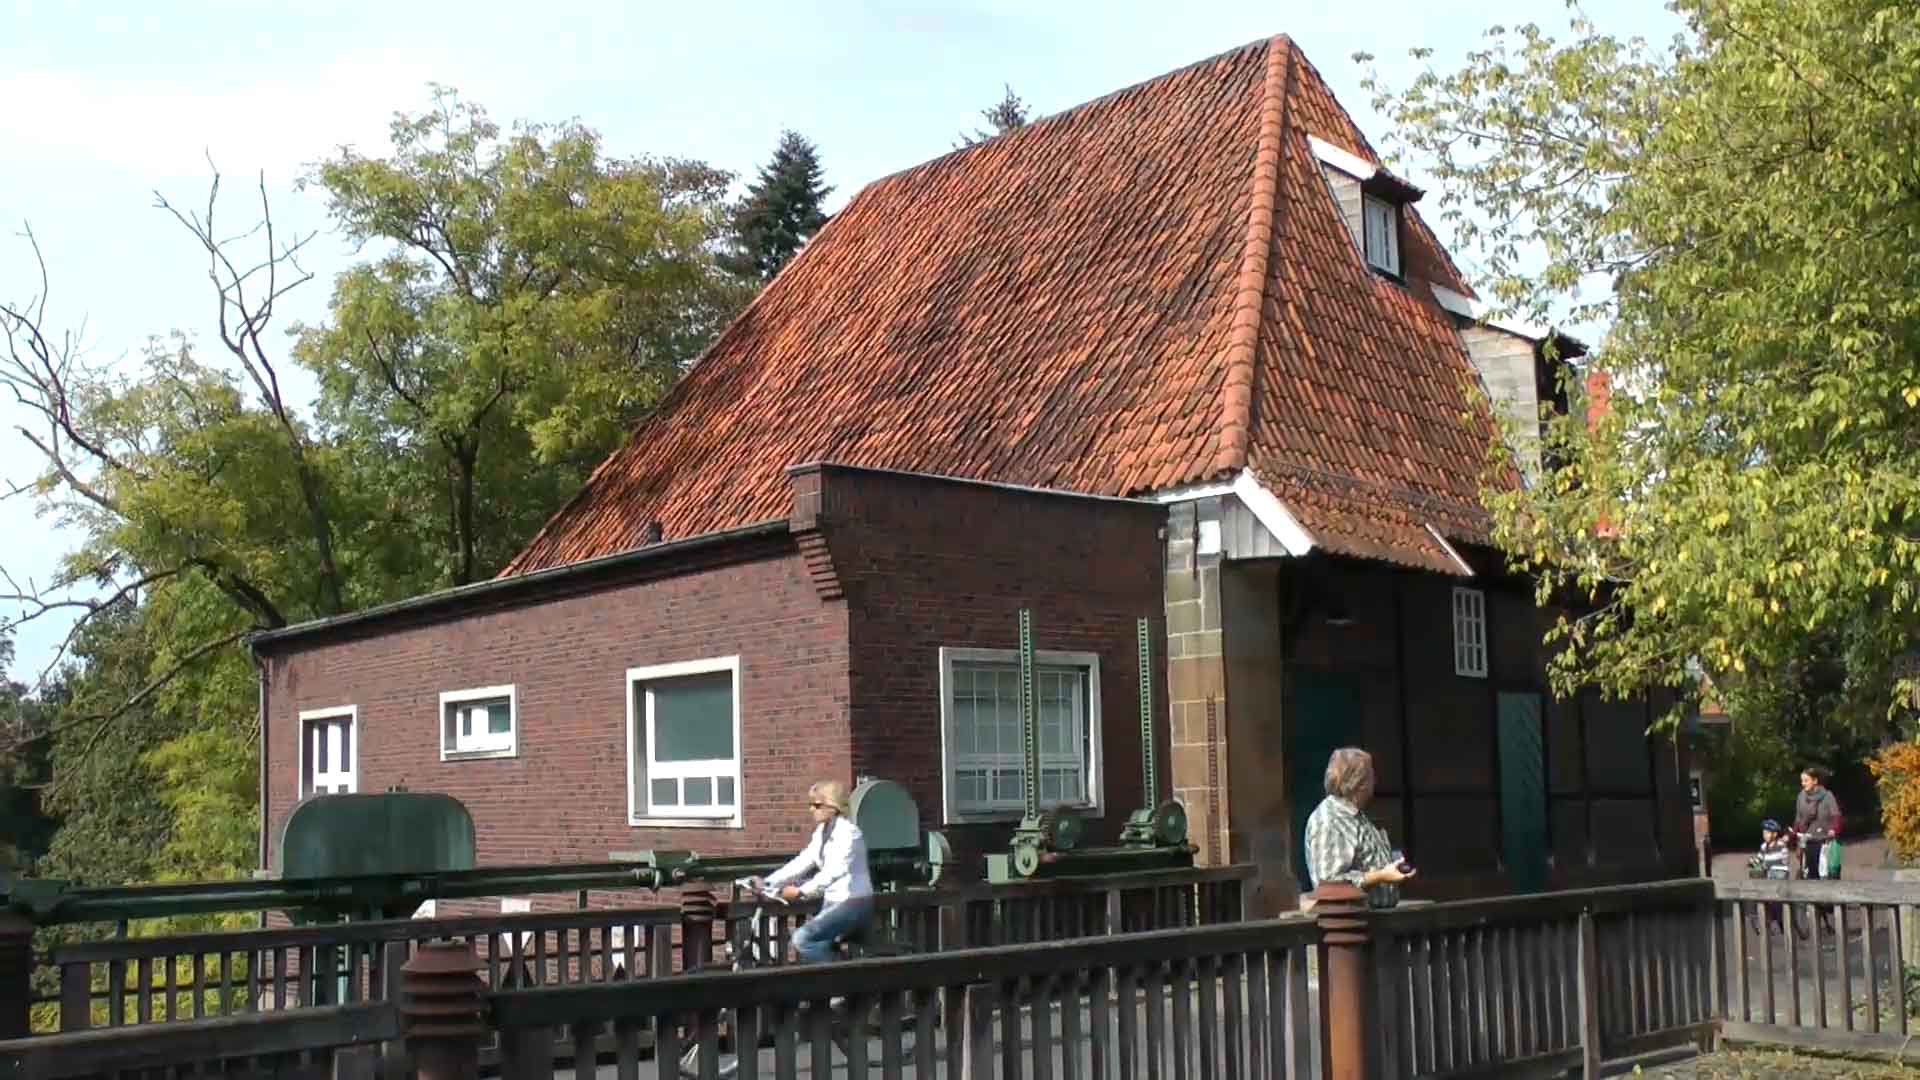 Kornmühle